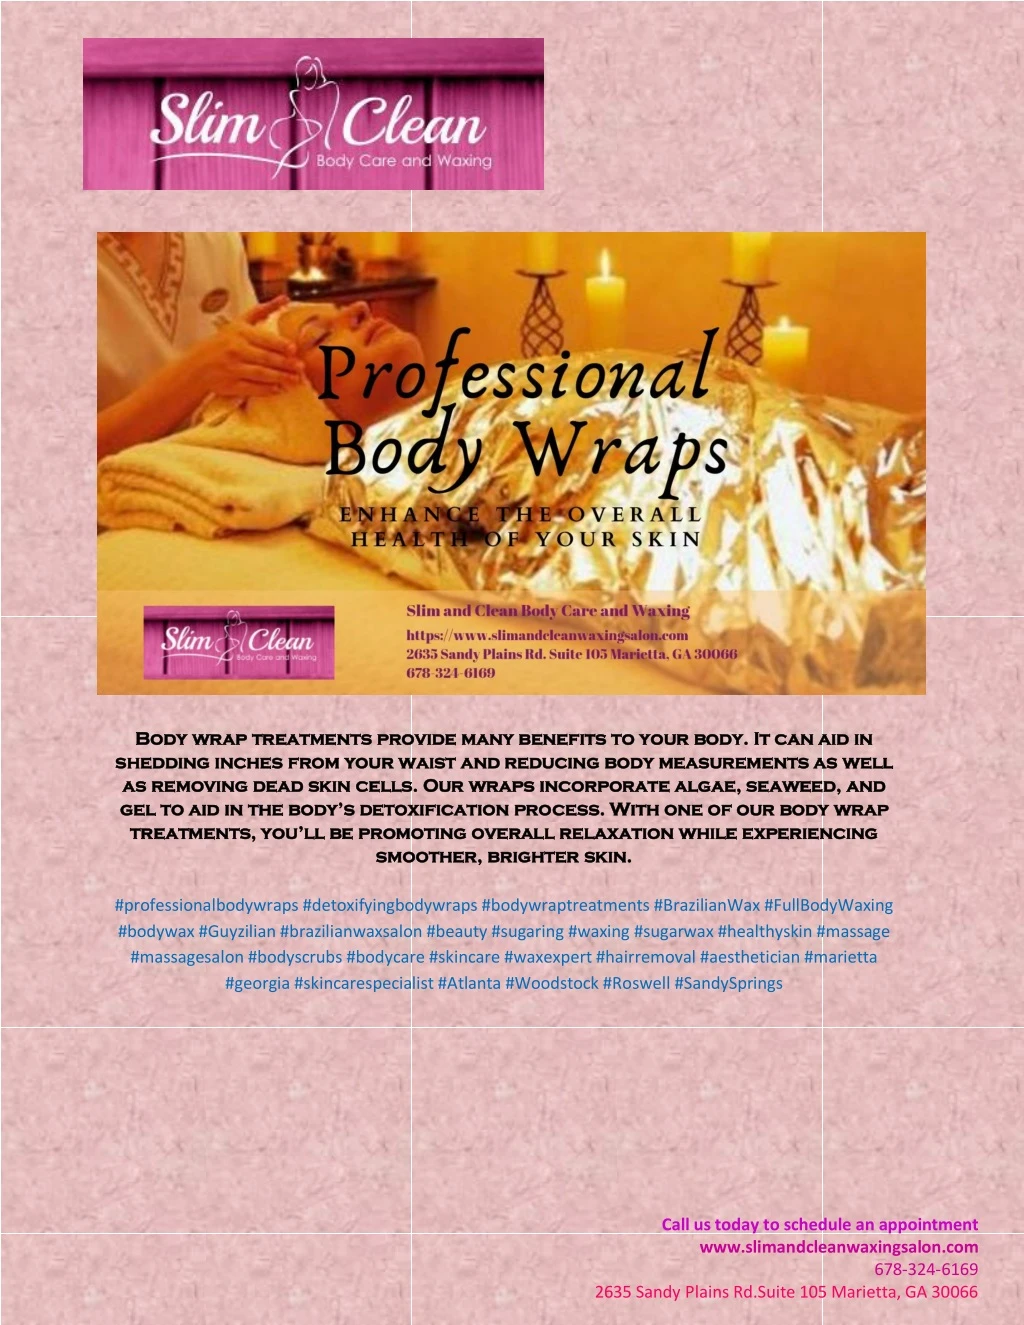 body wrap treatments provide many benefits